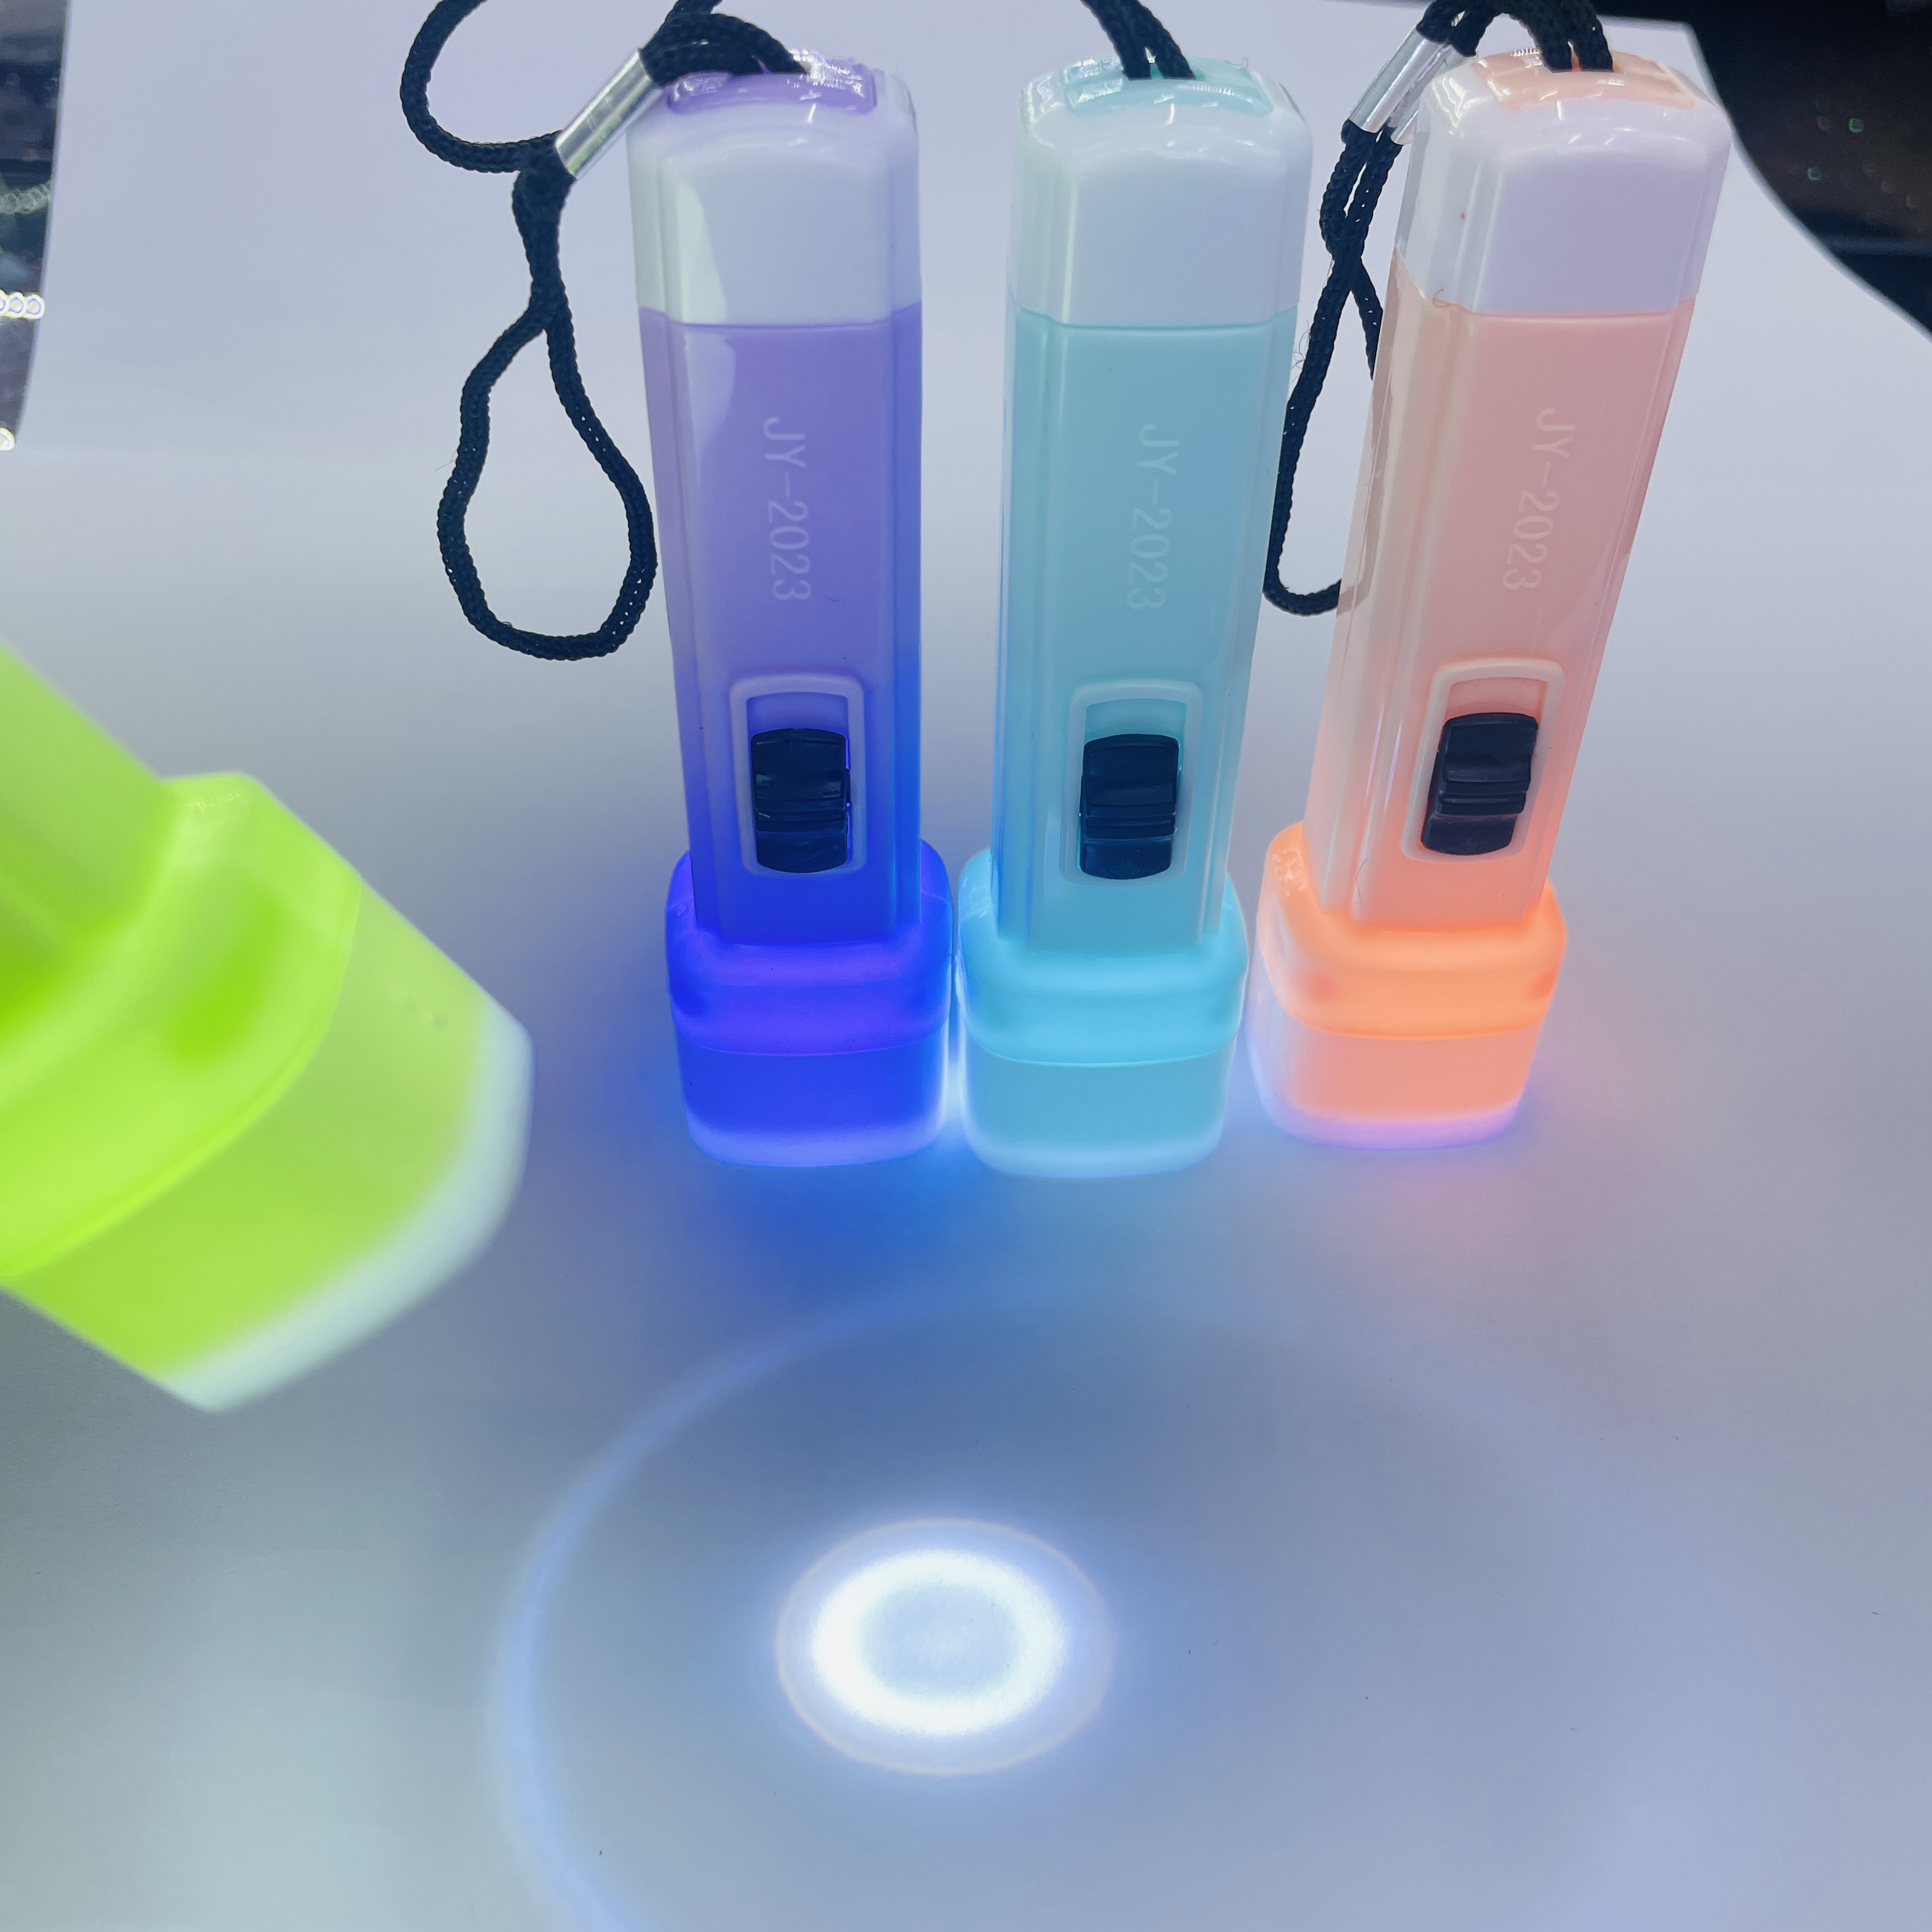 塑料玩具小手电筒强光电筒照明灯LED批发实用小家电小礼品详情图3